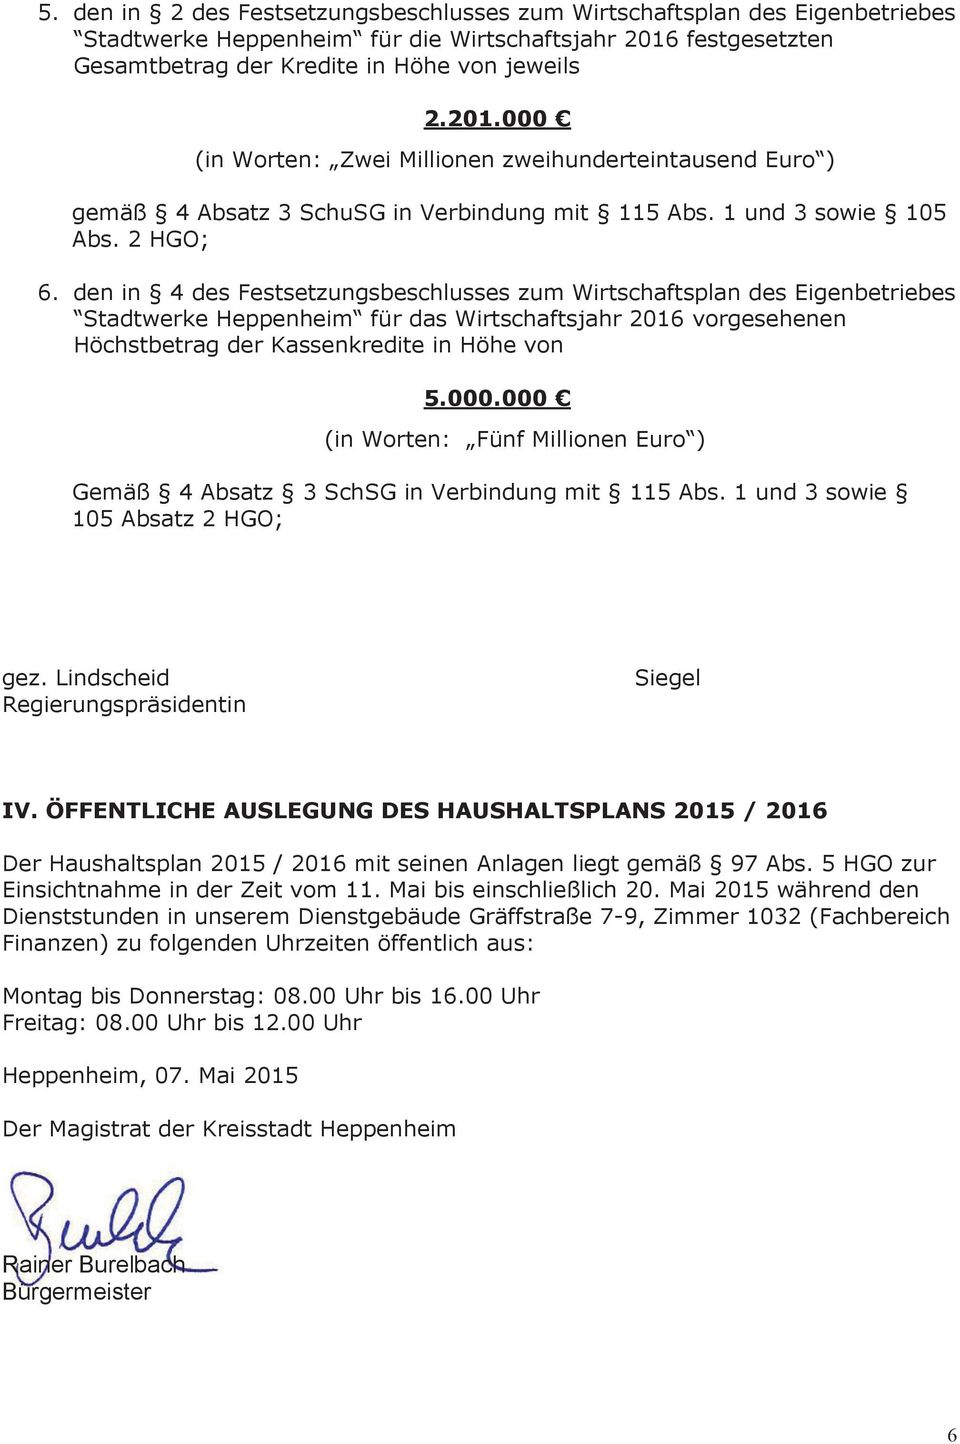 2 HGO; 6. den in 4 des Festsetzungsbeschlusses zum Wirtschaftsplan des Eigenbetriebes Stadtwerke Heppenheim für das Wirtschaftsjahr 2016 vorgesehenen Höchstbetrag der Kassenkredite in Höhe von 5.000.